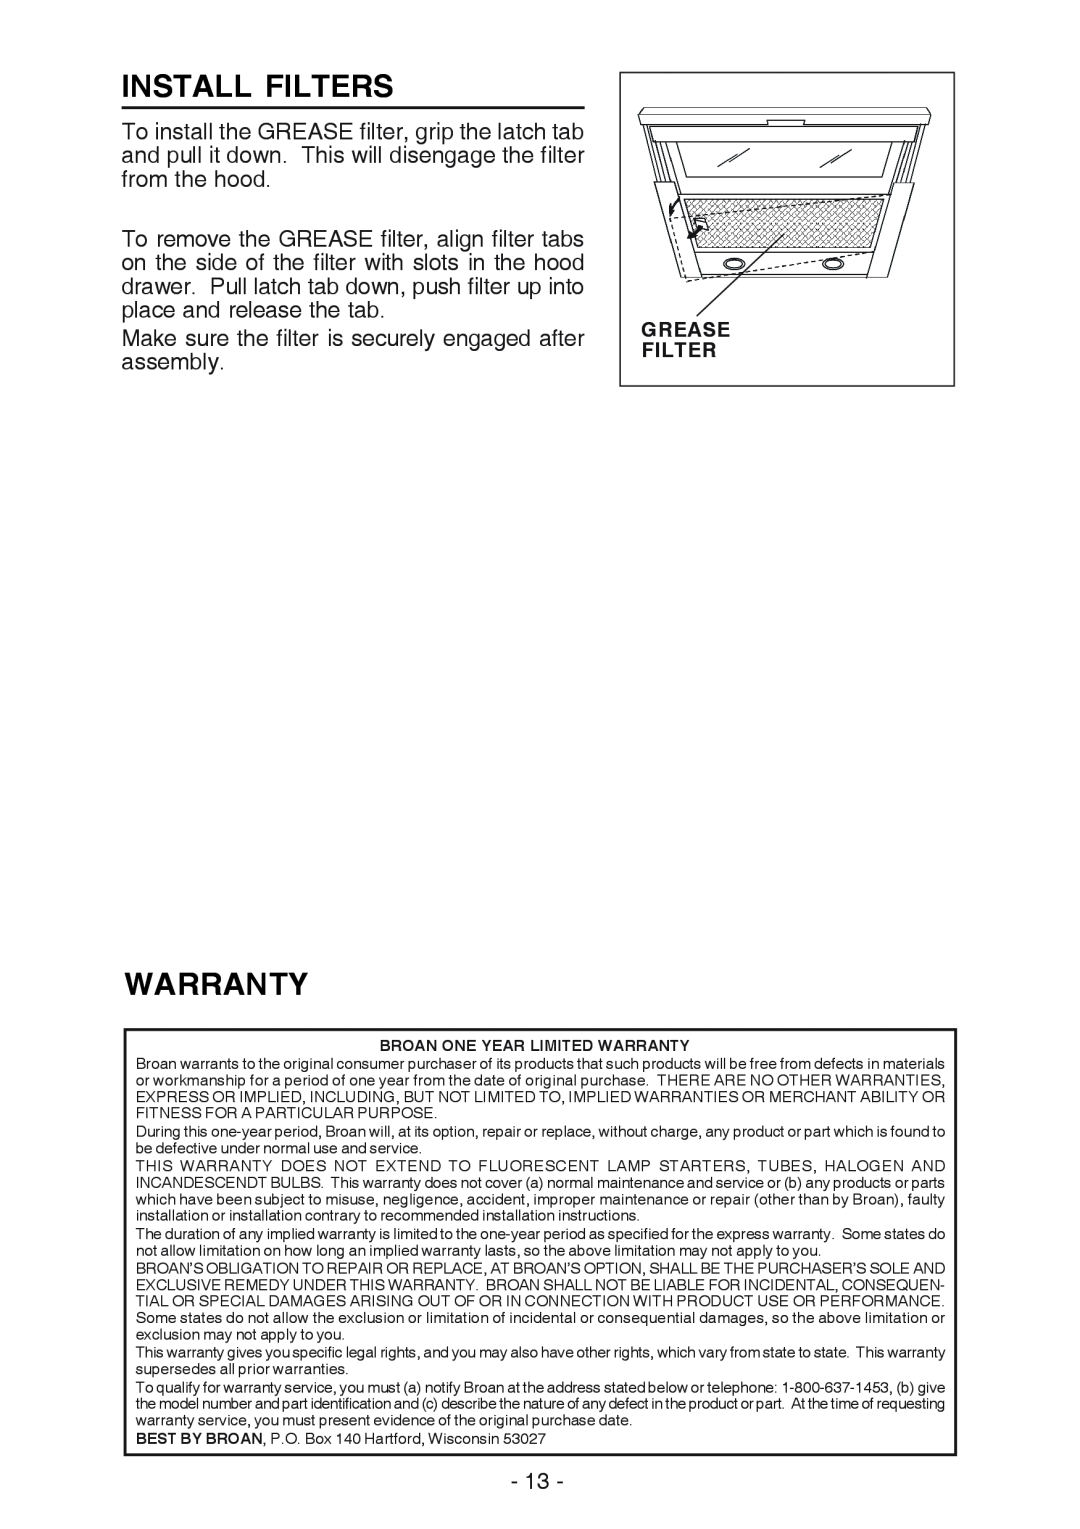 Best U102E manual Install Filters, Warranty 